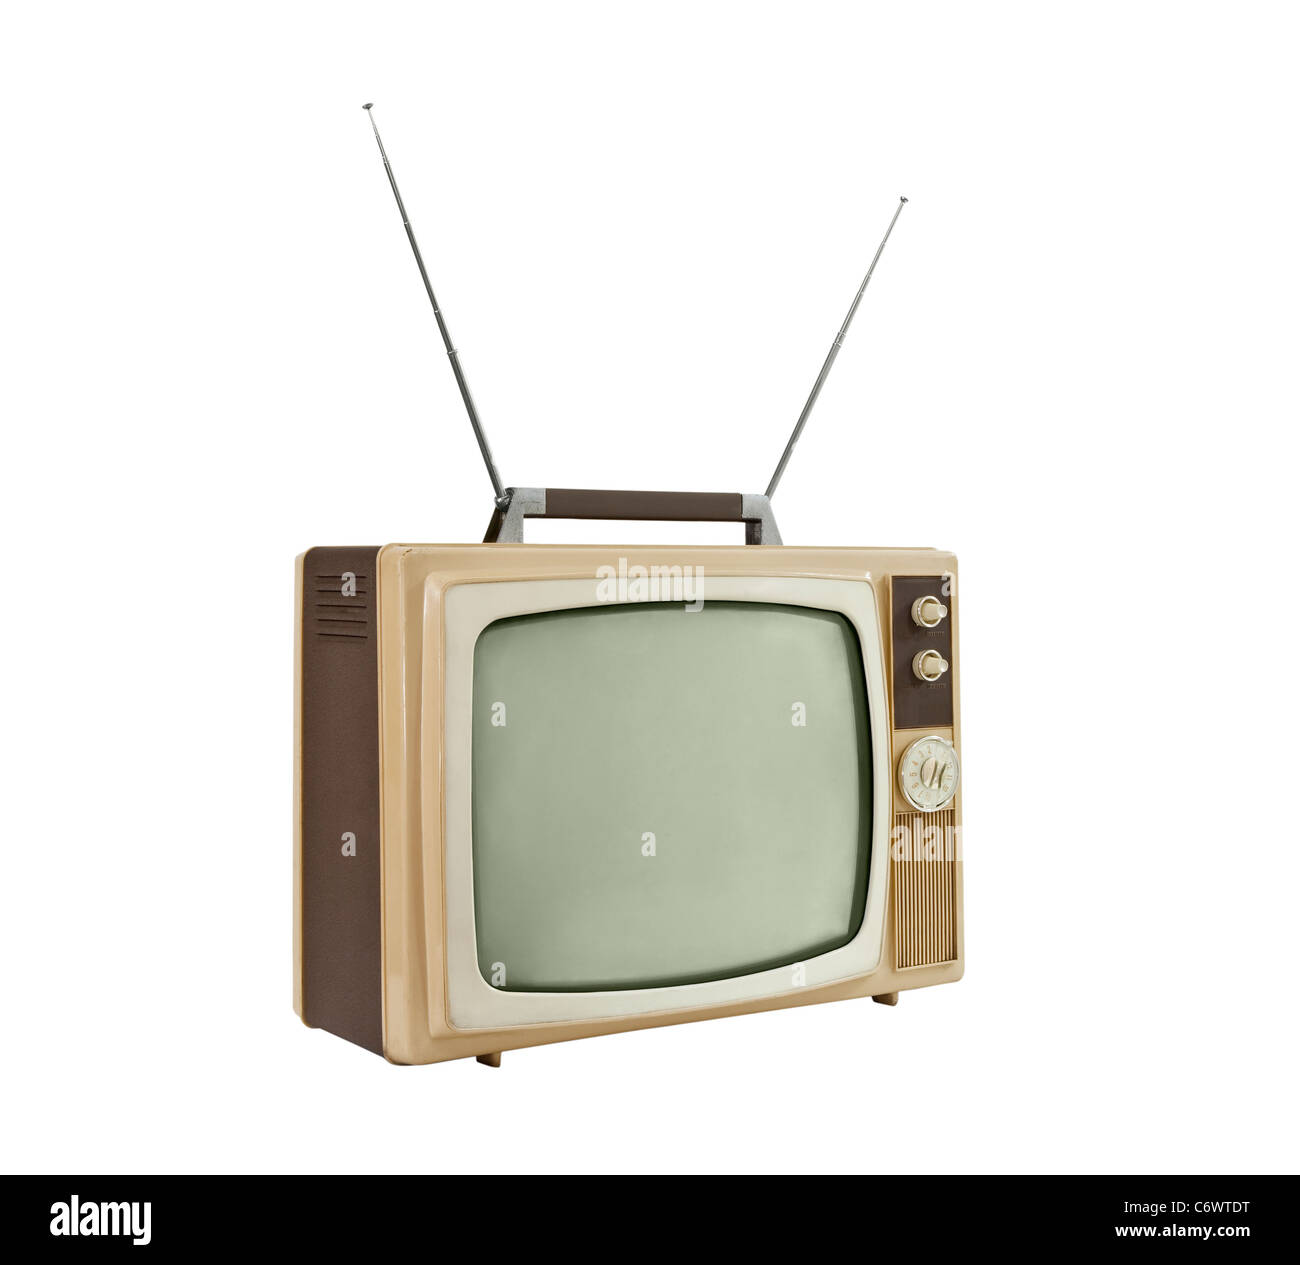 Телевизор показывает с антенной. Советский телевизор с антенной. Ретро телевизор с антенной. Старая антенна для телевизора. Маленький телевизор с антенной.